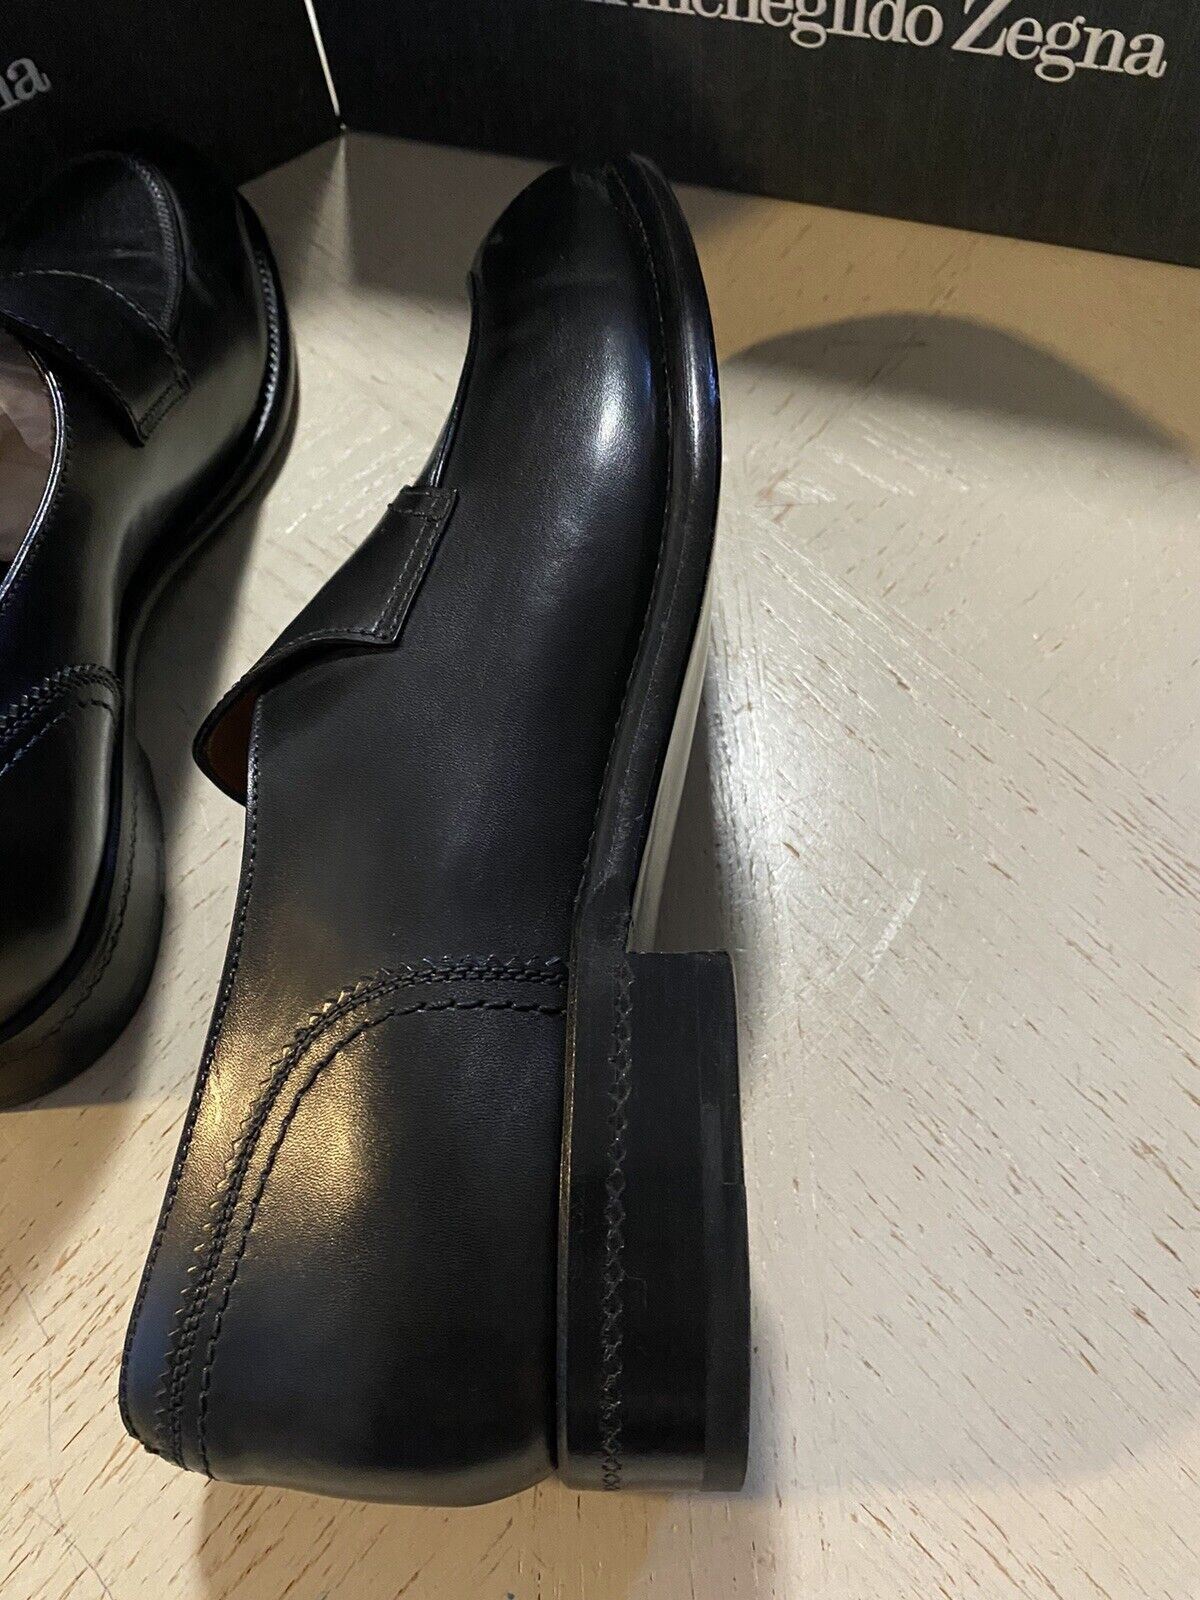 Новые кожаные лоферы Ermenegildo Zegna Couture, черные 9,5, США, Италия, $1250